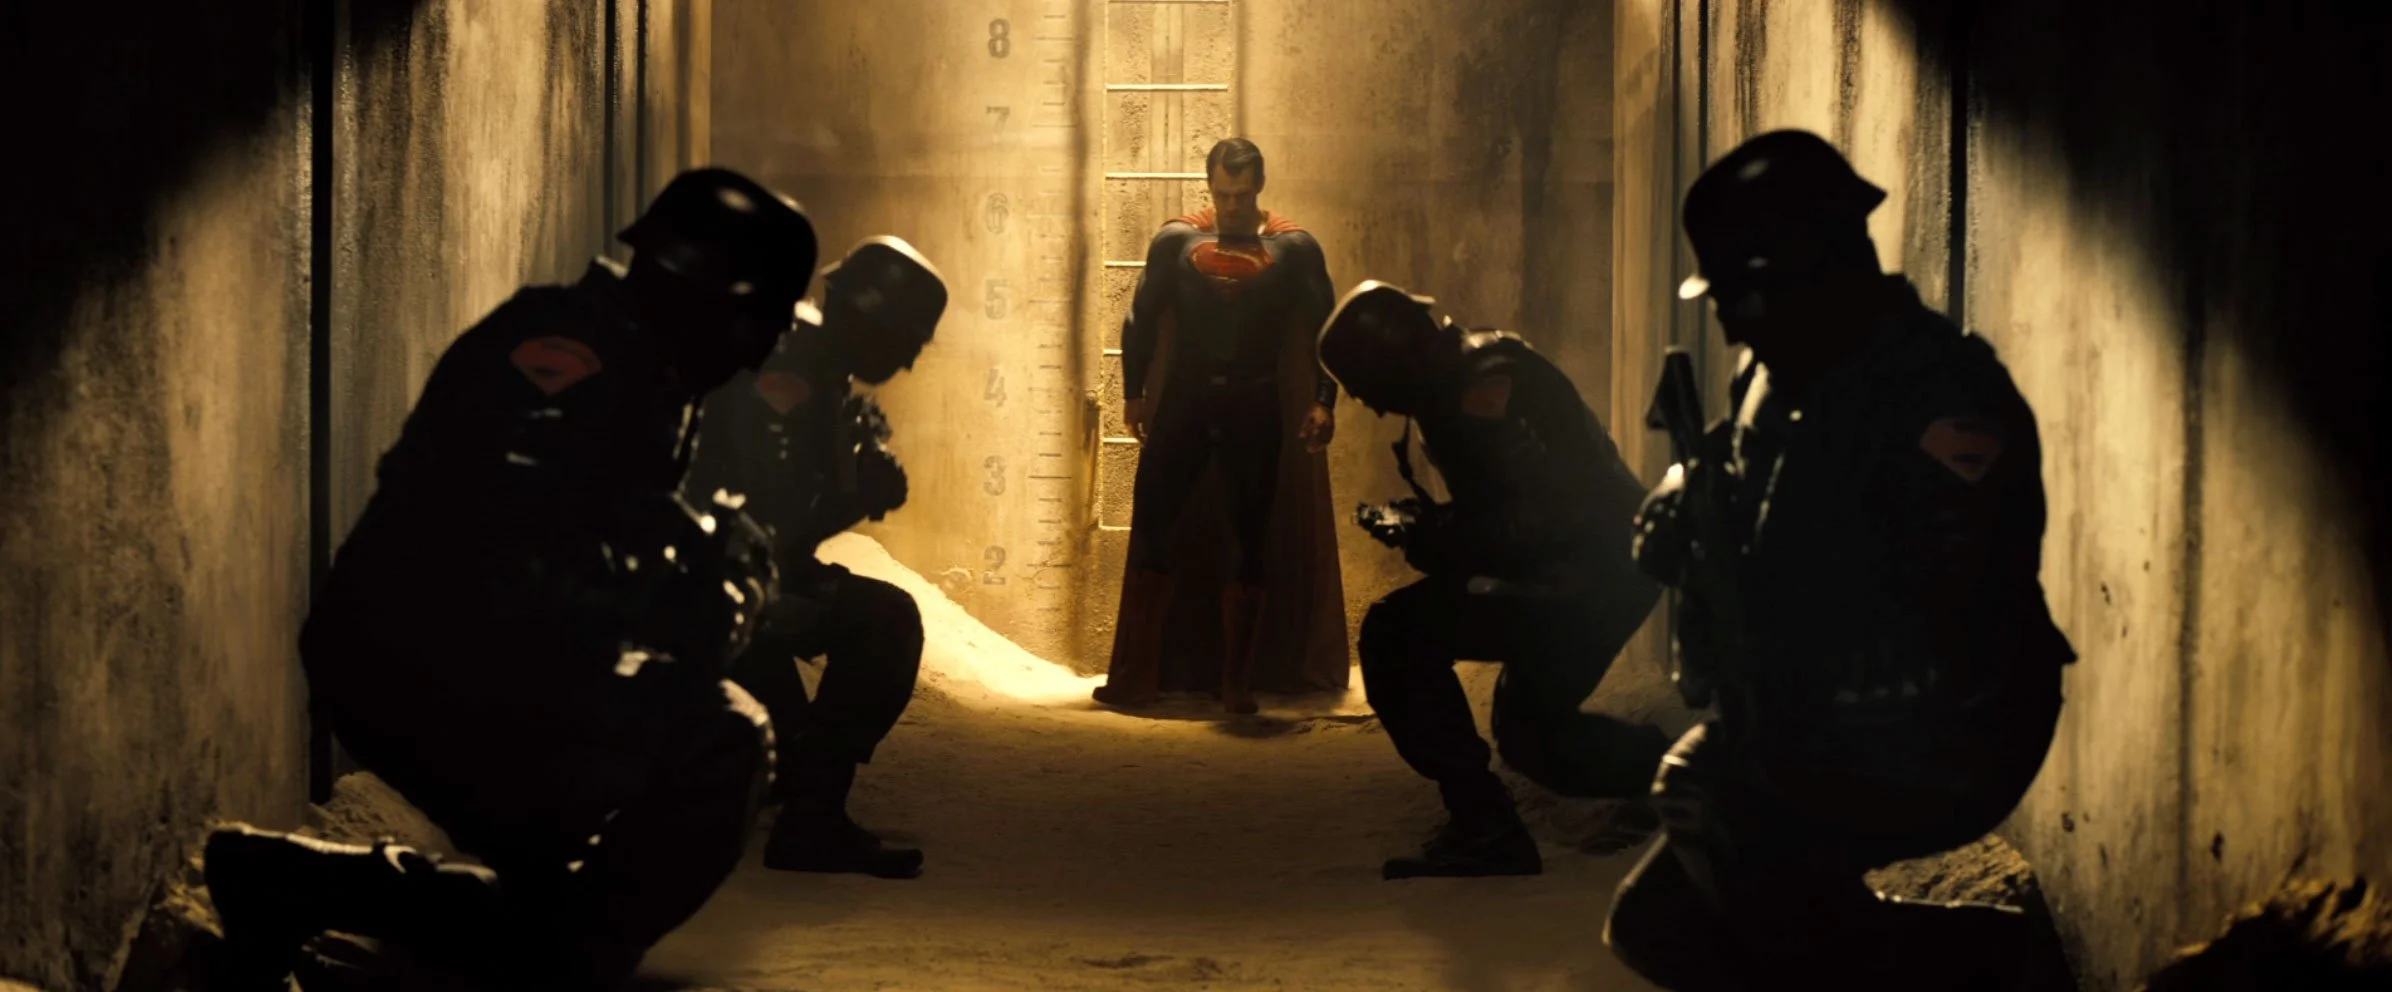 Официальный тизер «Бэтмена против Супермена: На заре справедливости» - фото 7